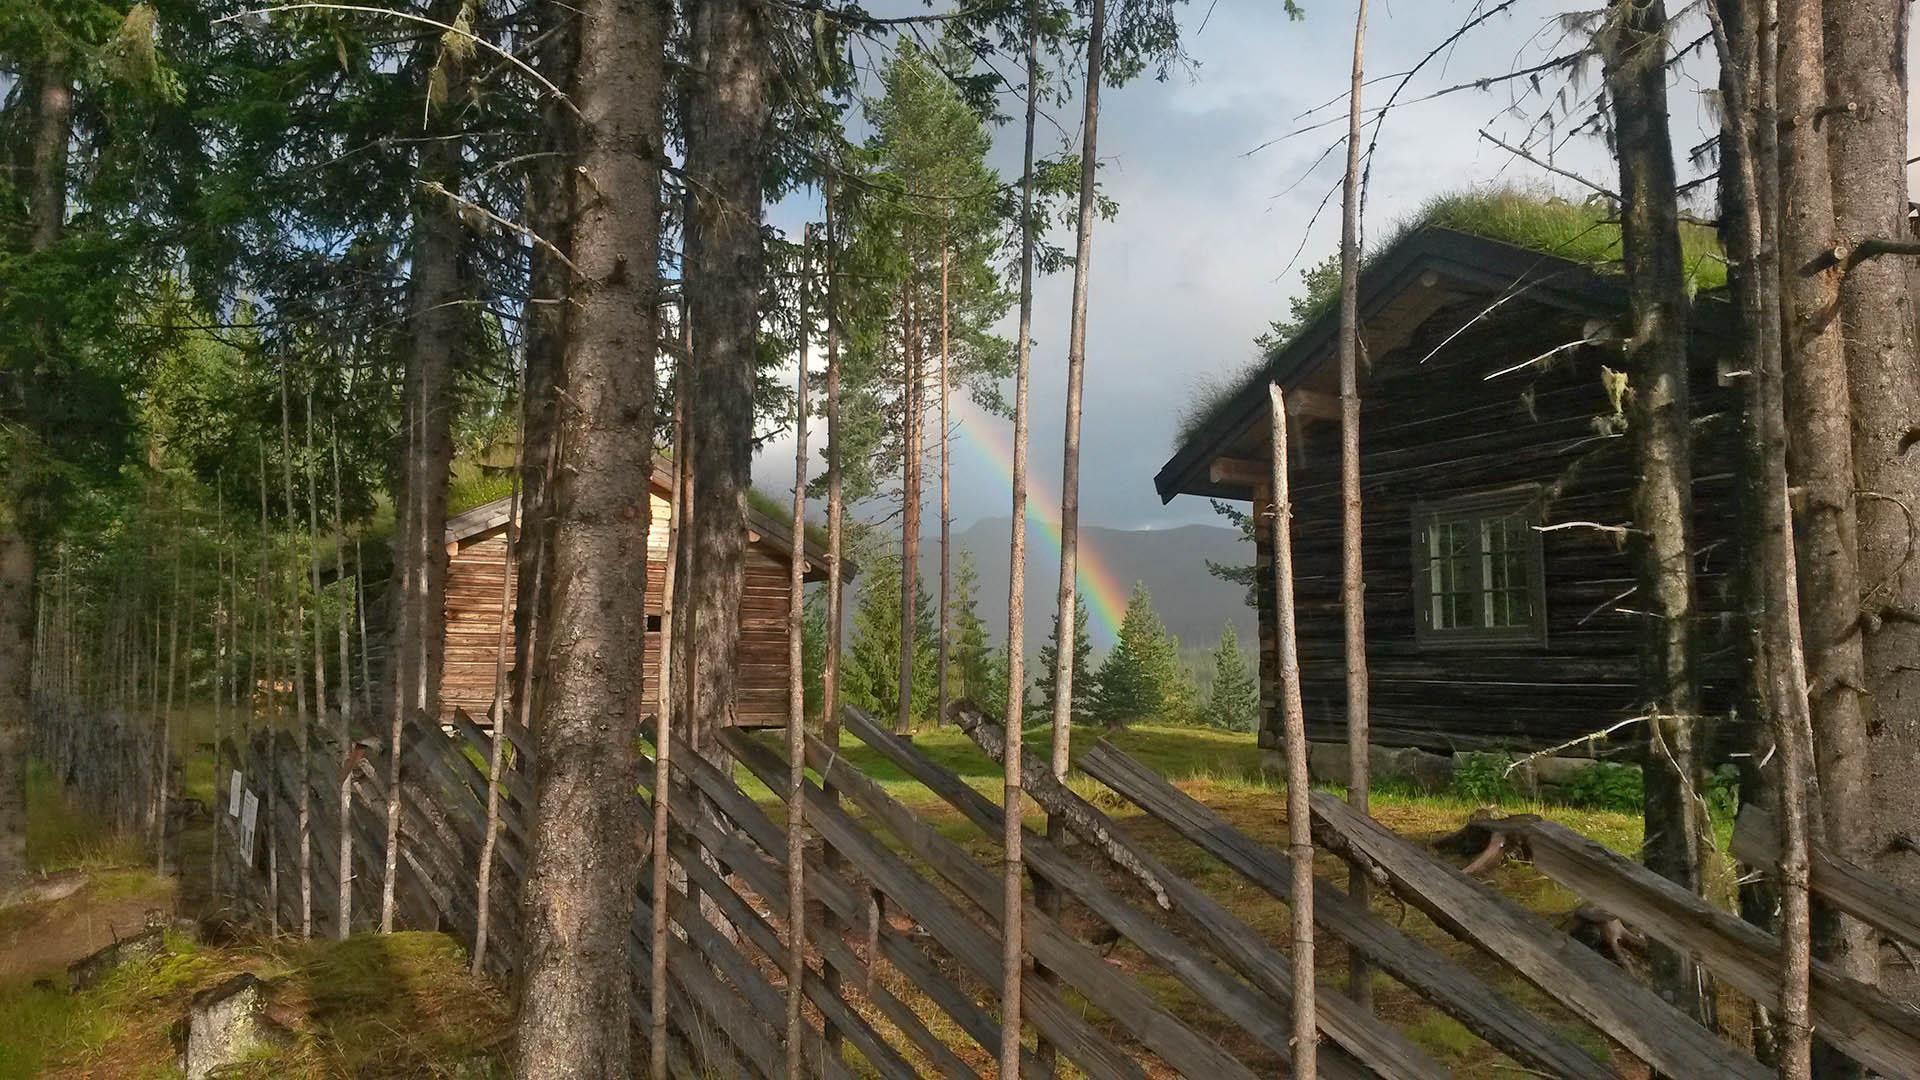 Traditioneller norwegischer Holzzaun vor einer alten Blockhütte mit Grasdach. Regenbogen.